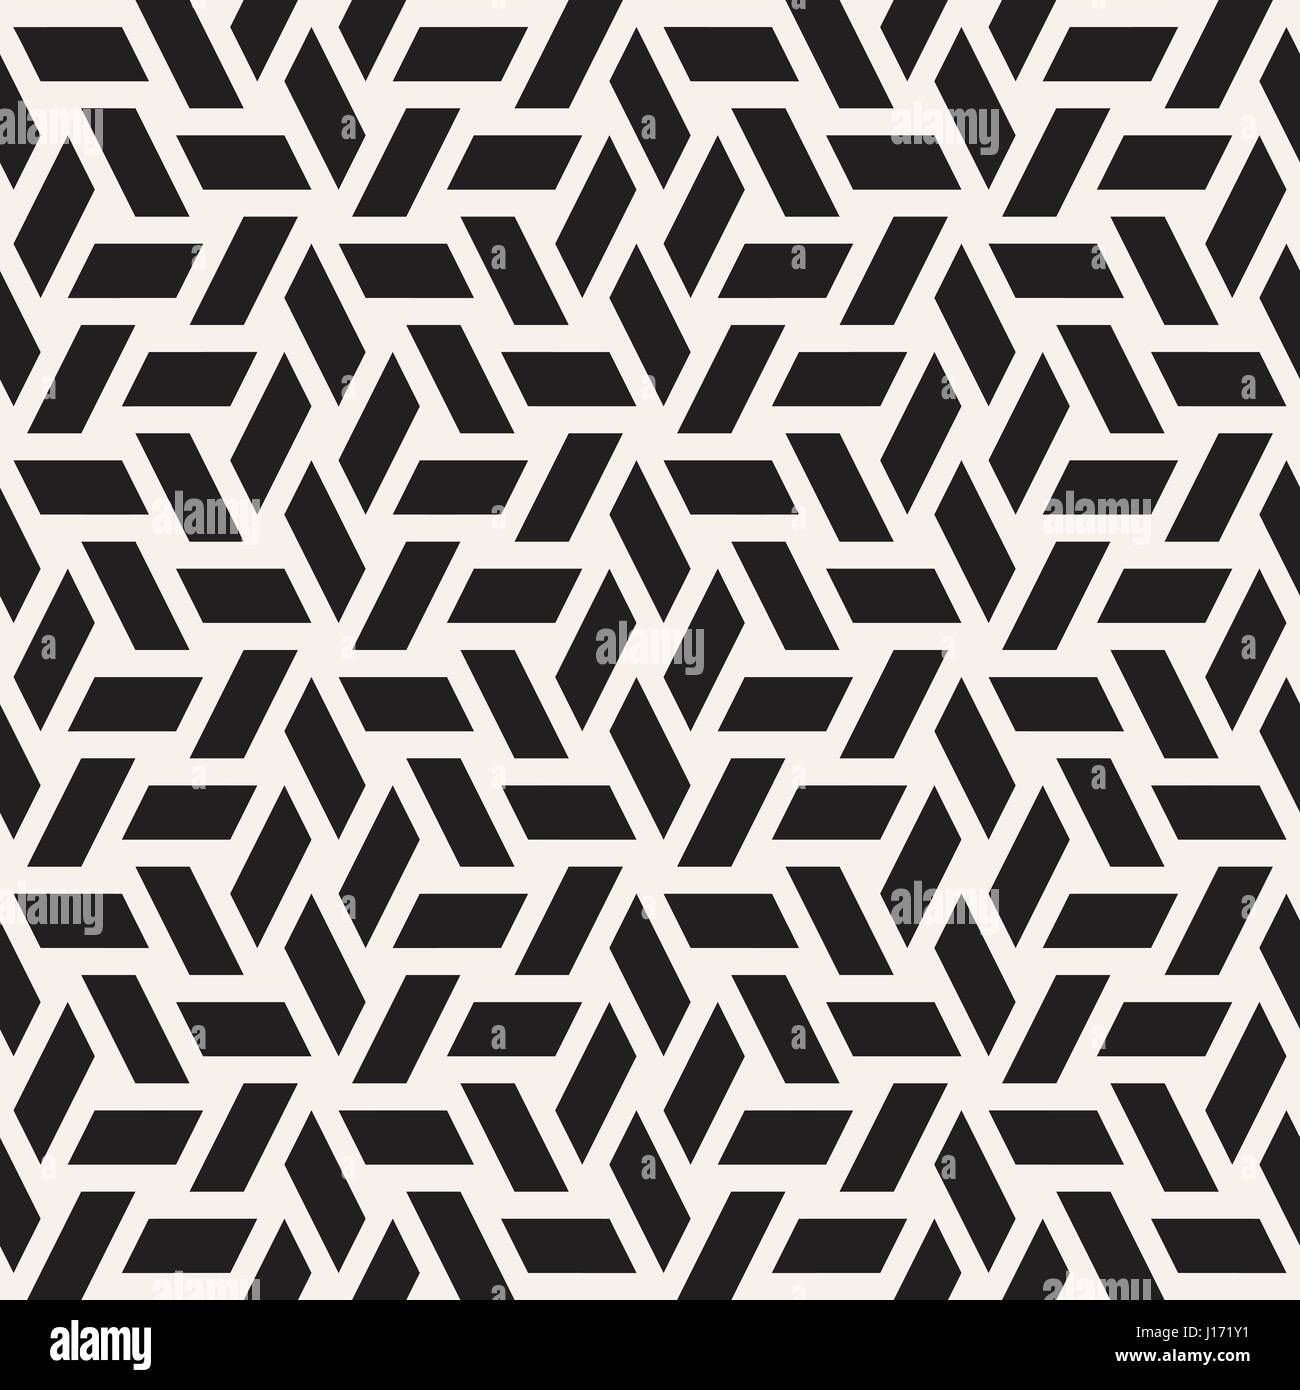 Kubische Gitter Tiling endlose elegante Textur. Abstrakten geometrischen Hintergrund-Design. Nahtlose Rhombus Formen schwarz-weiß Vektormuster. Stock Vektor